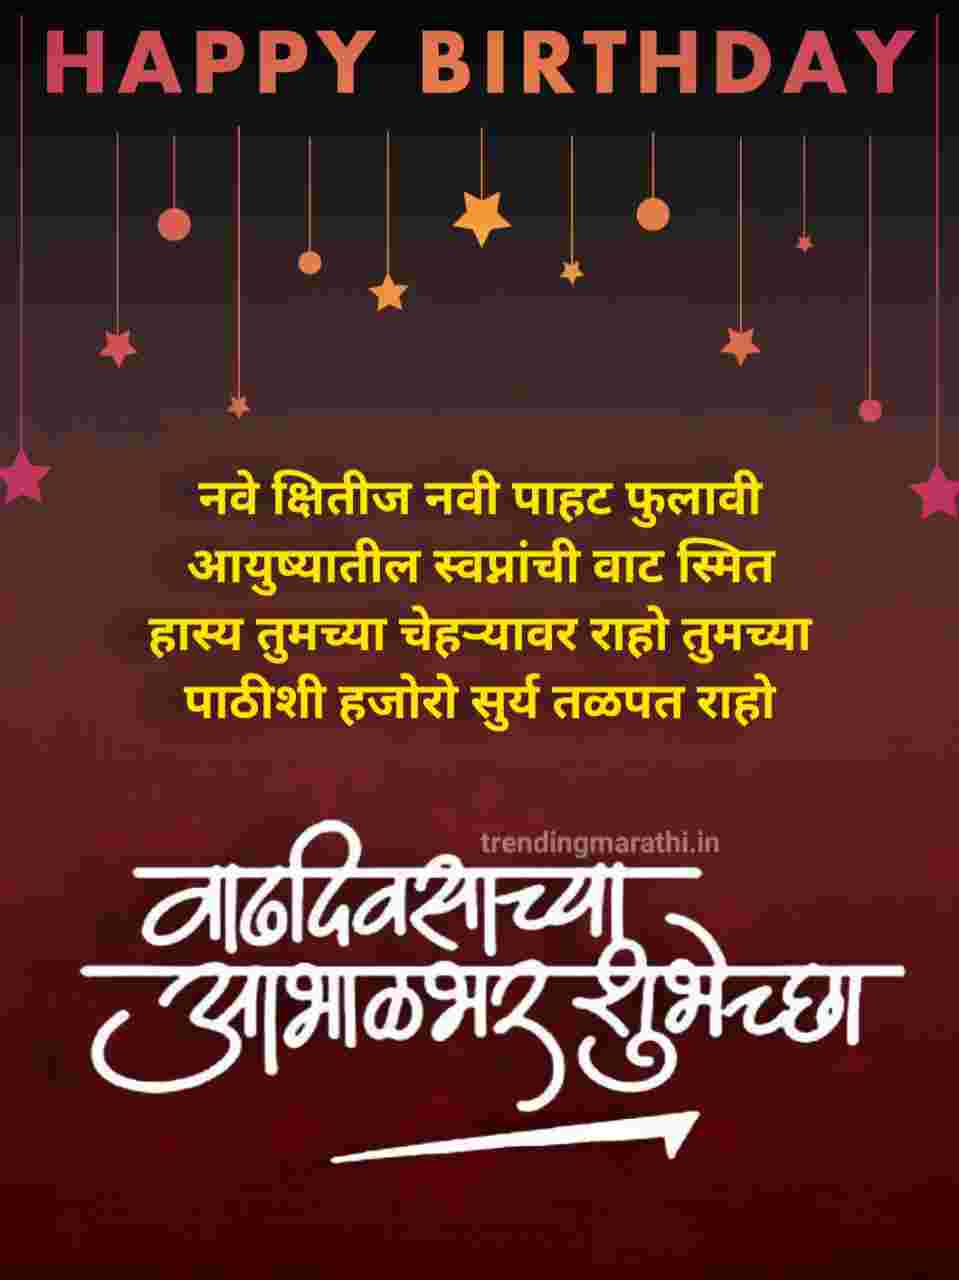 Happy Birthday Wishes In Marathi: वाढदिवसाच्या ...